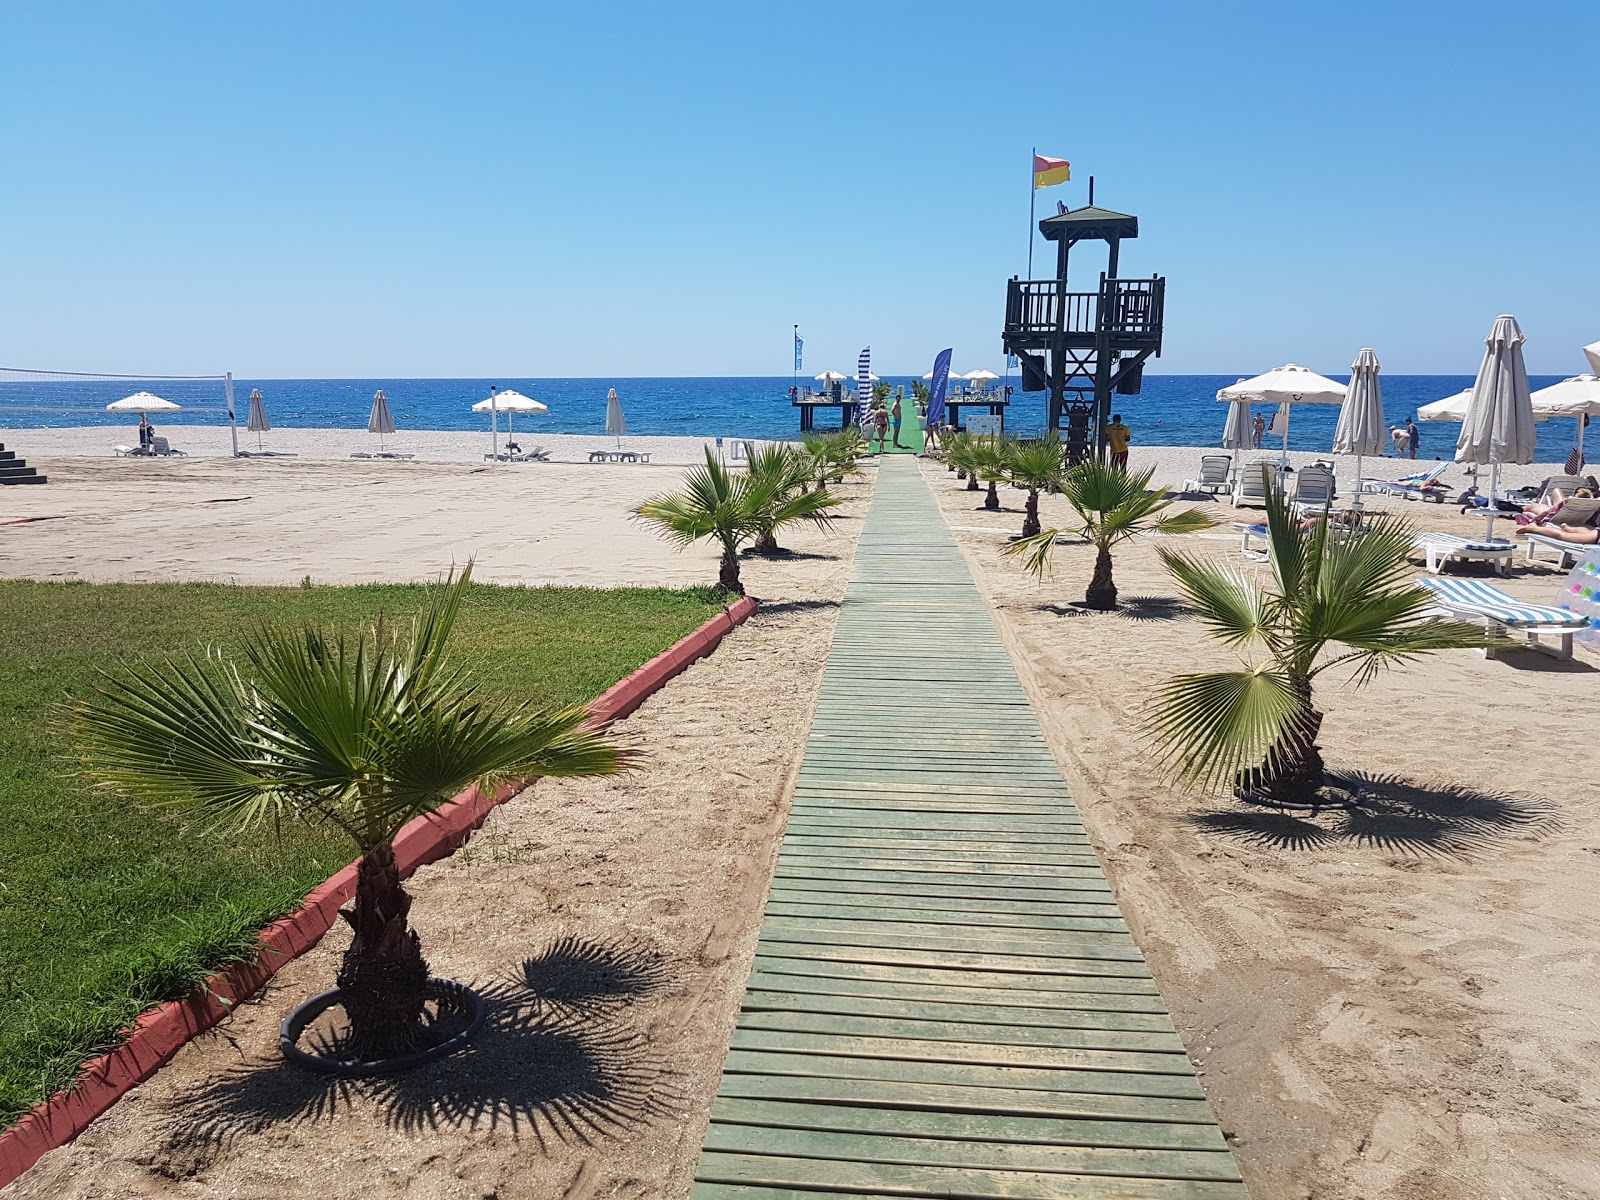 Fotografie cu Elikesik beach - locul popular printre cunoscătorii de relaxare